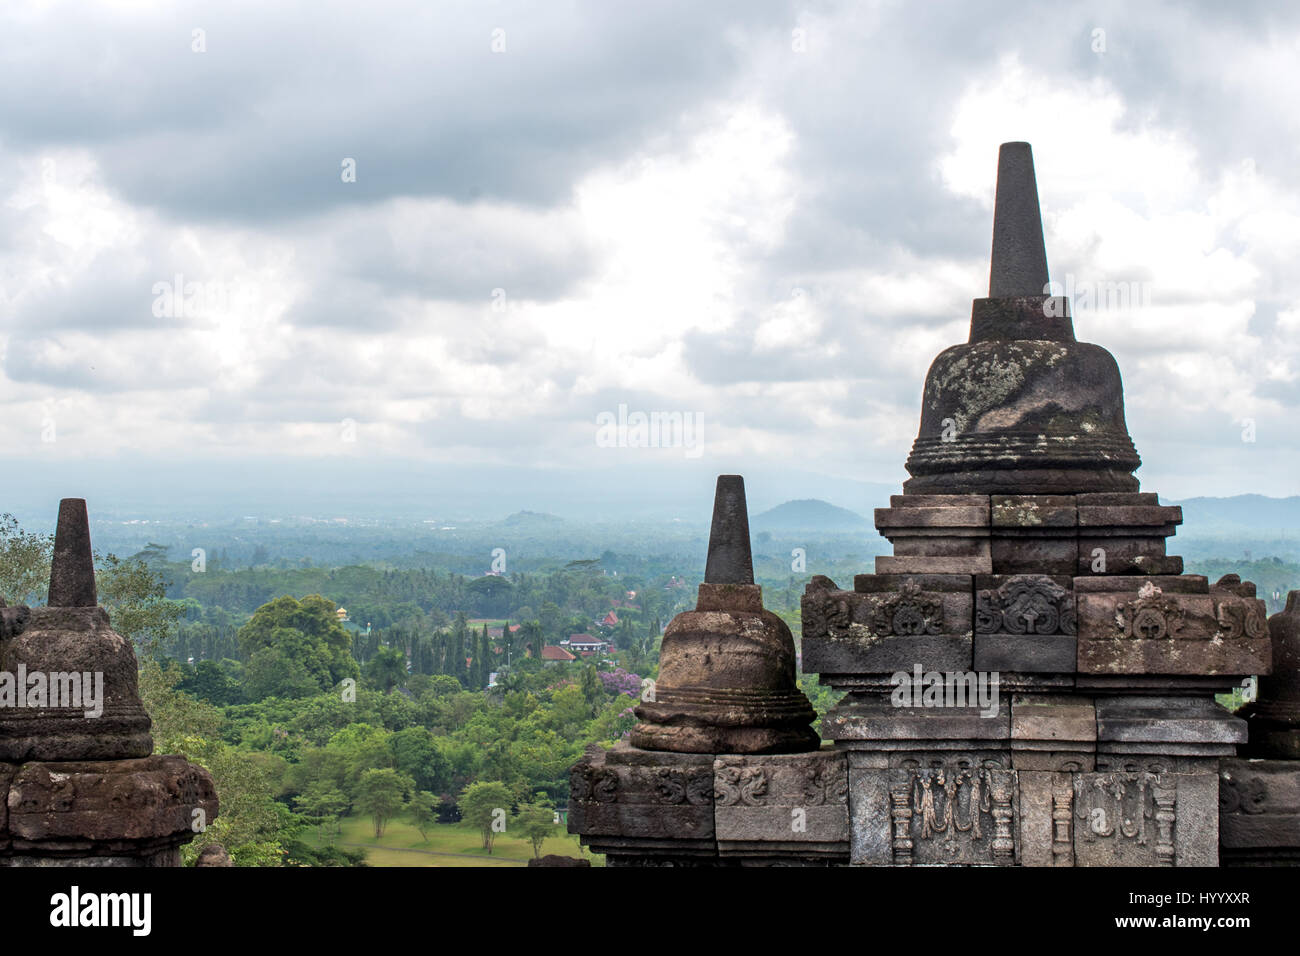 Temple de Borobudur, Yogyakarta, Indonésie, le plus grand temple bouddhiste du monde, UNESCO World Heritage Site Banque D'Images